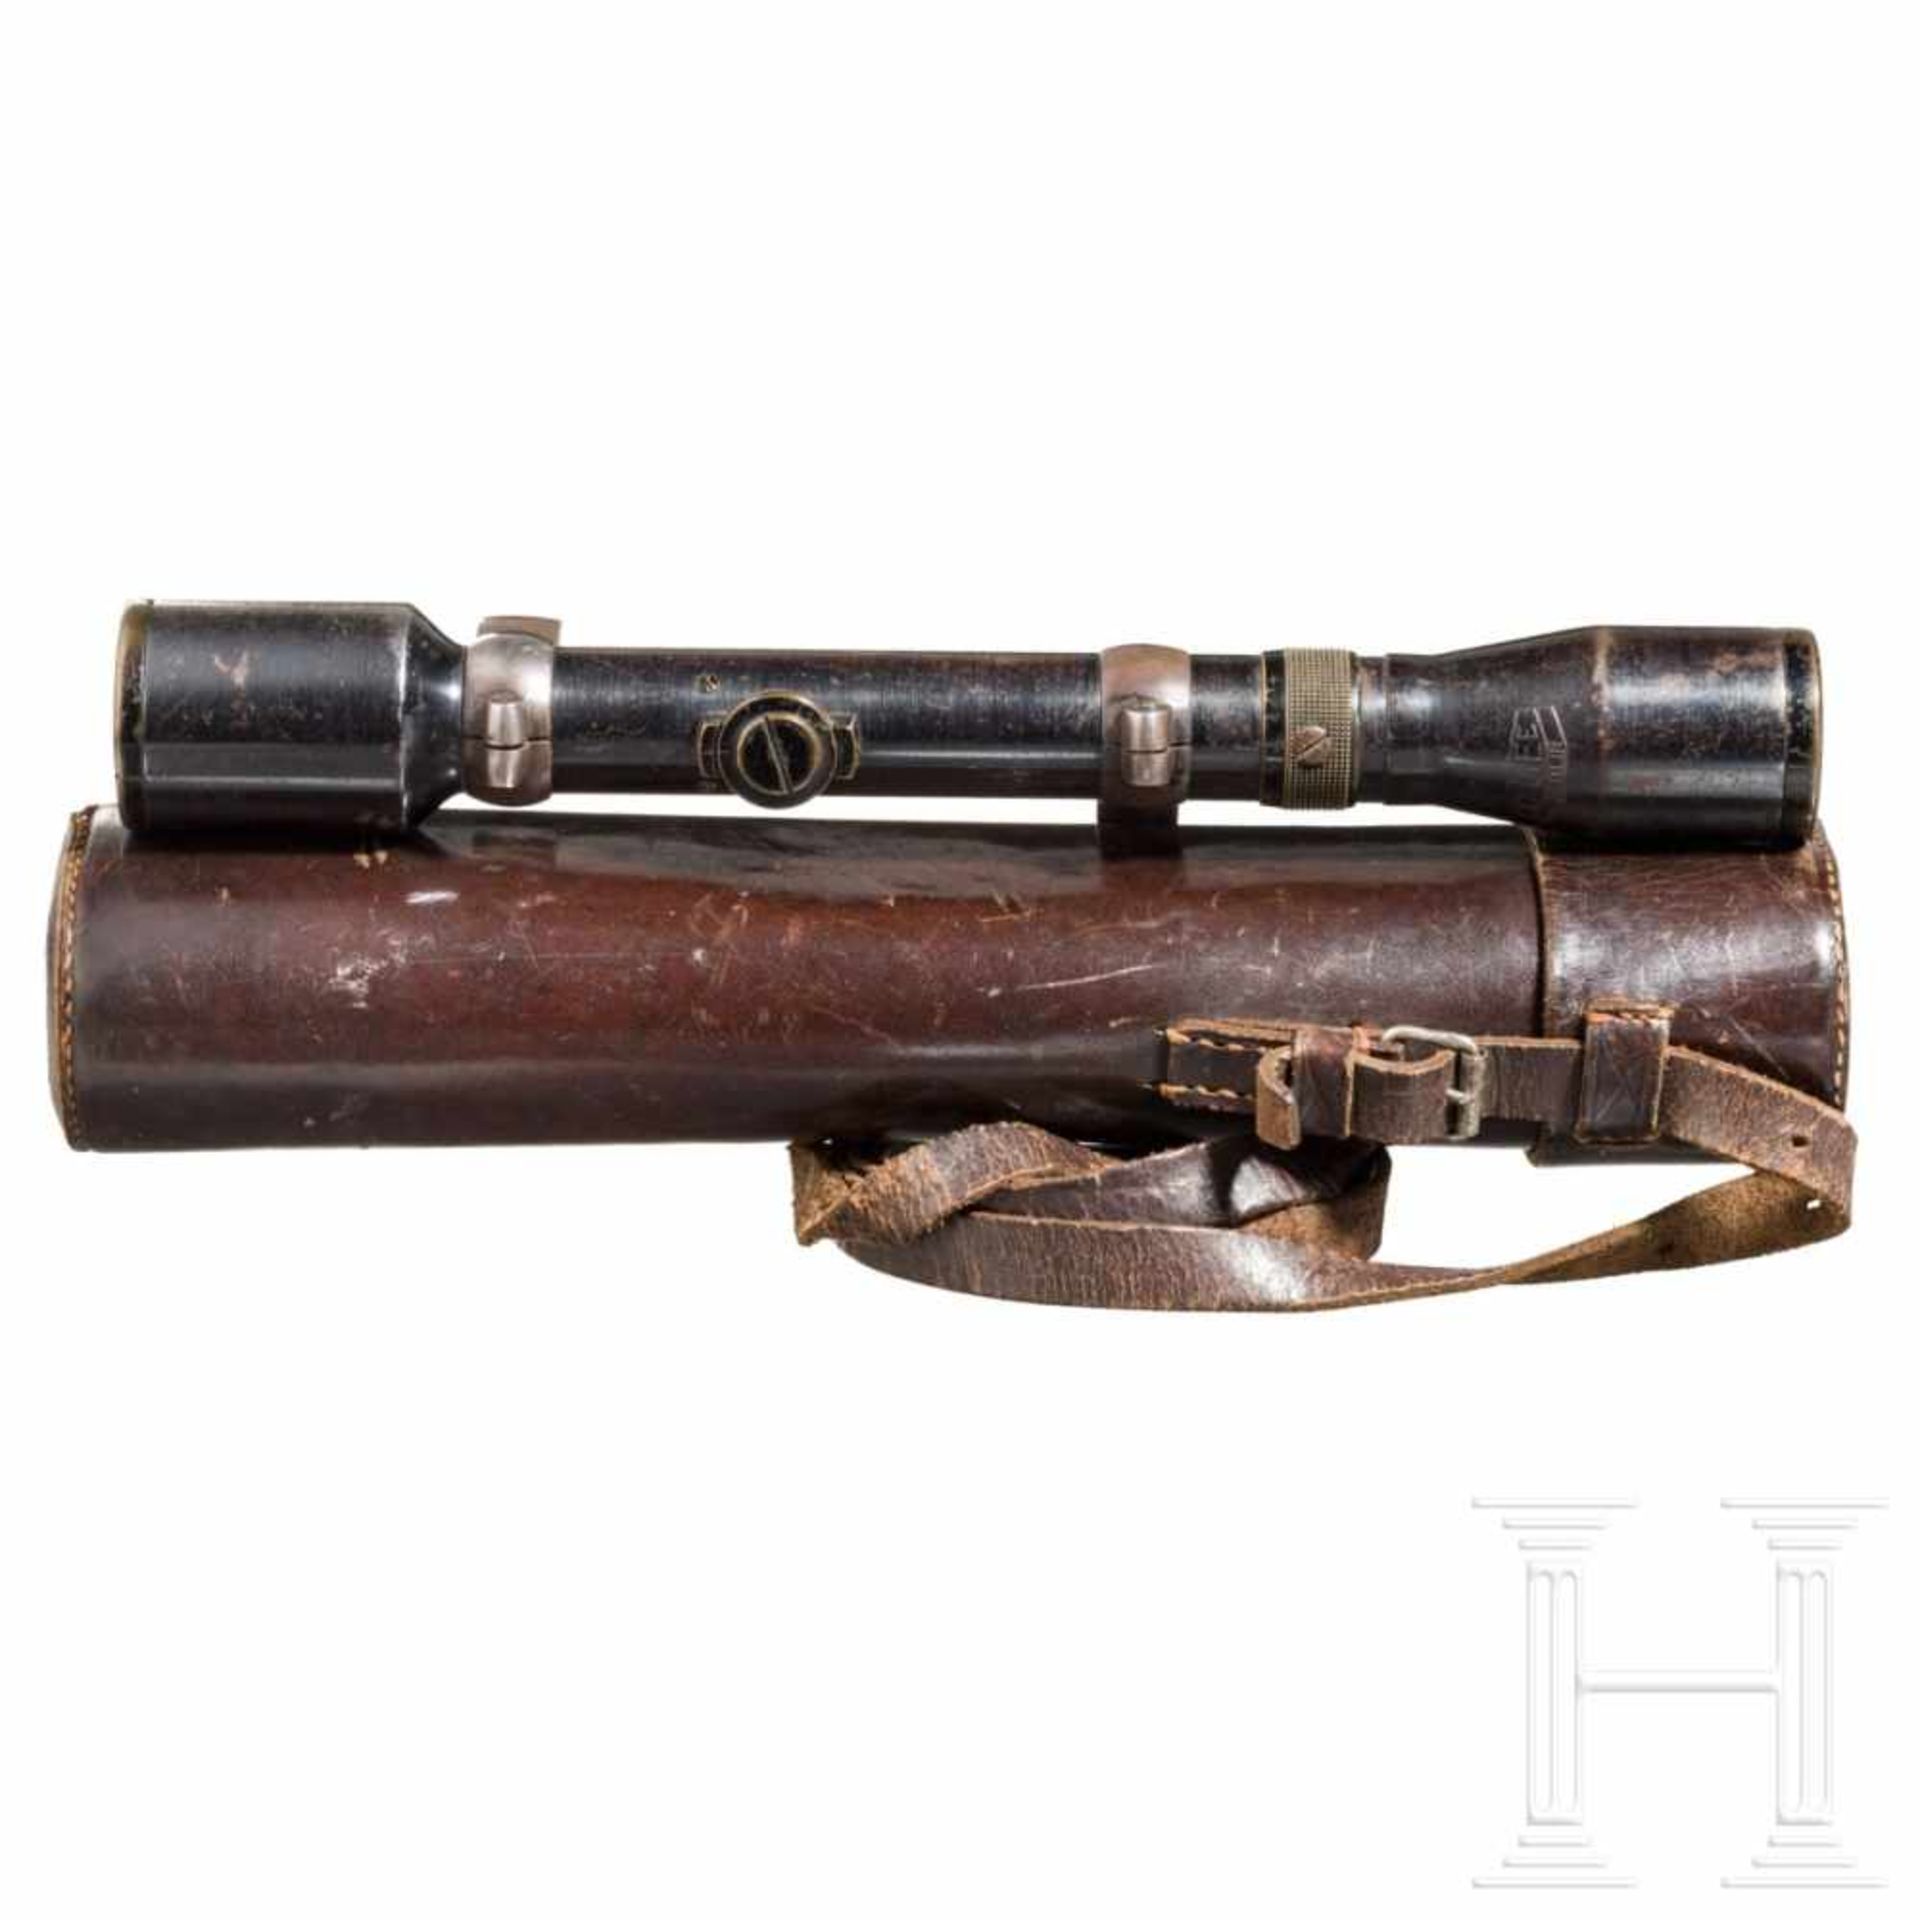 Rifle scope OIGEE Luxor hell 4 x with quiverStahl, brüniert (berieben), Herstellerbezeichnung,